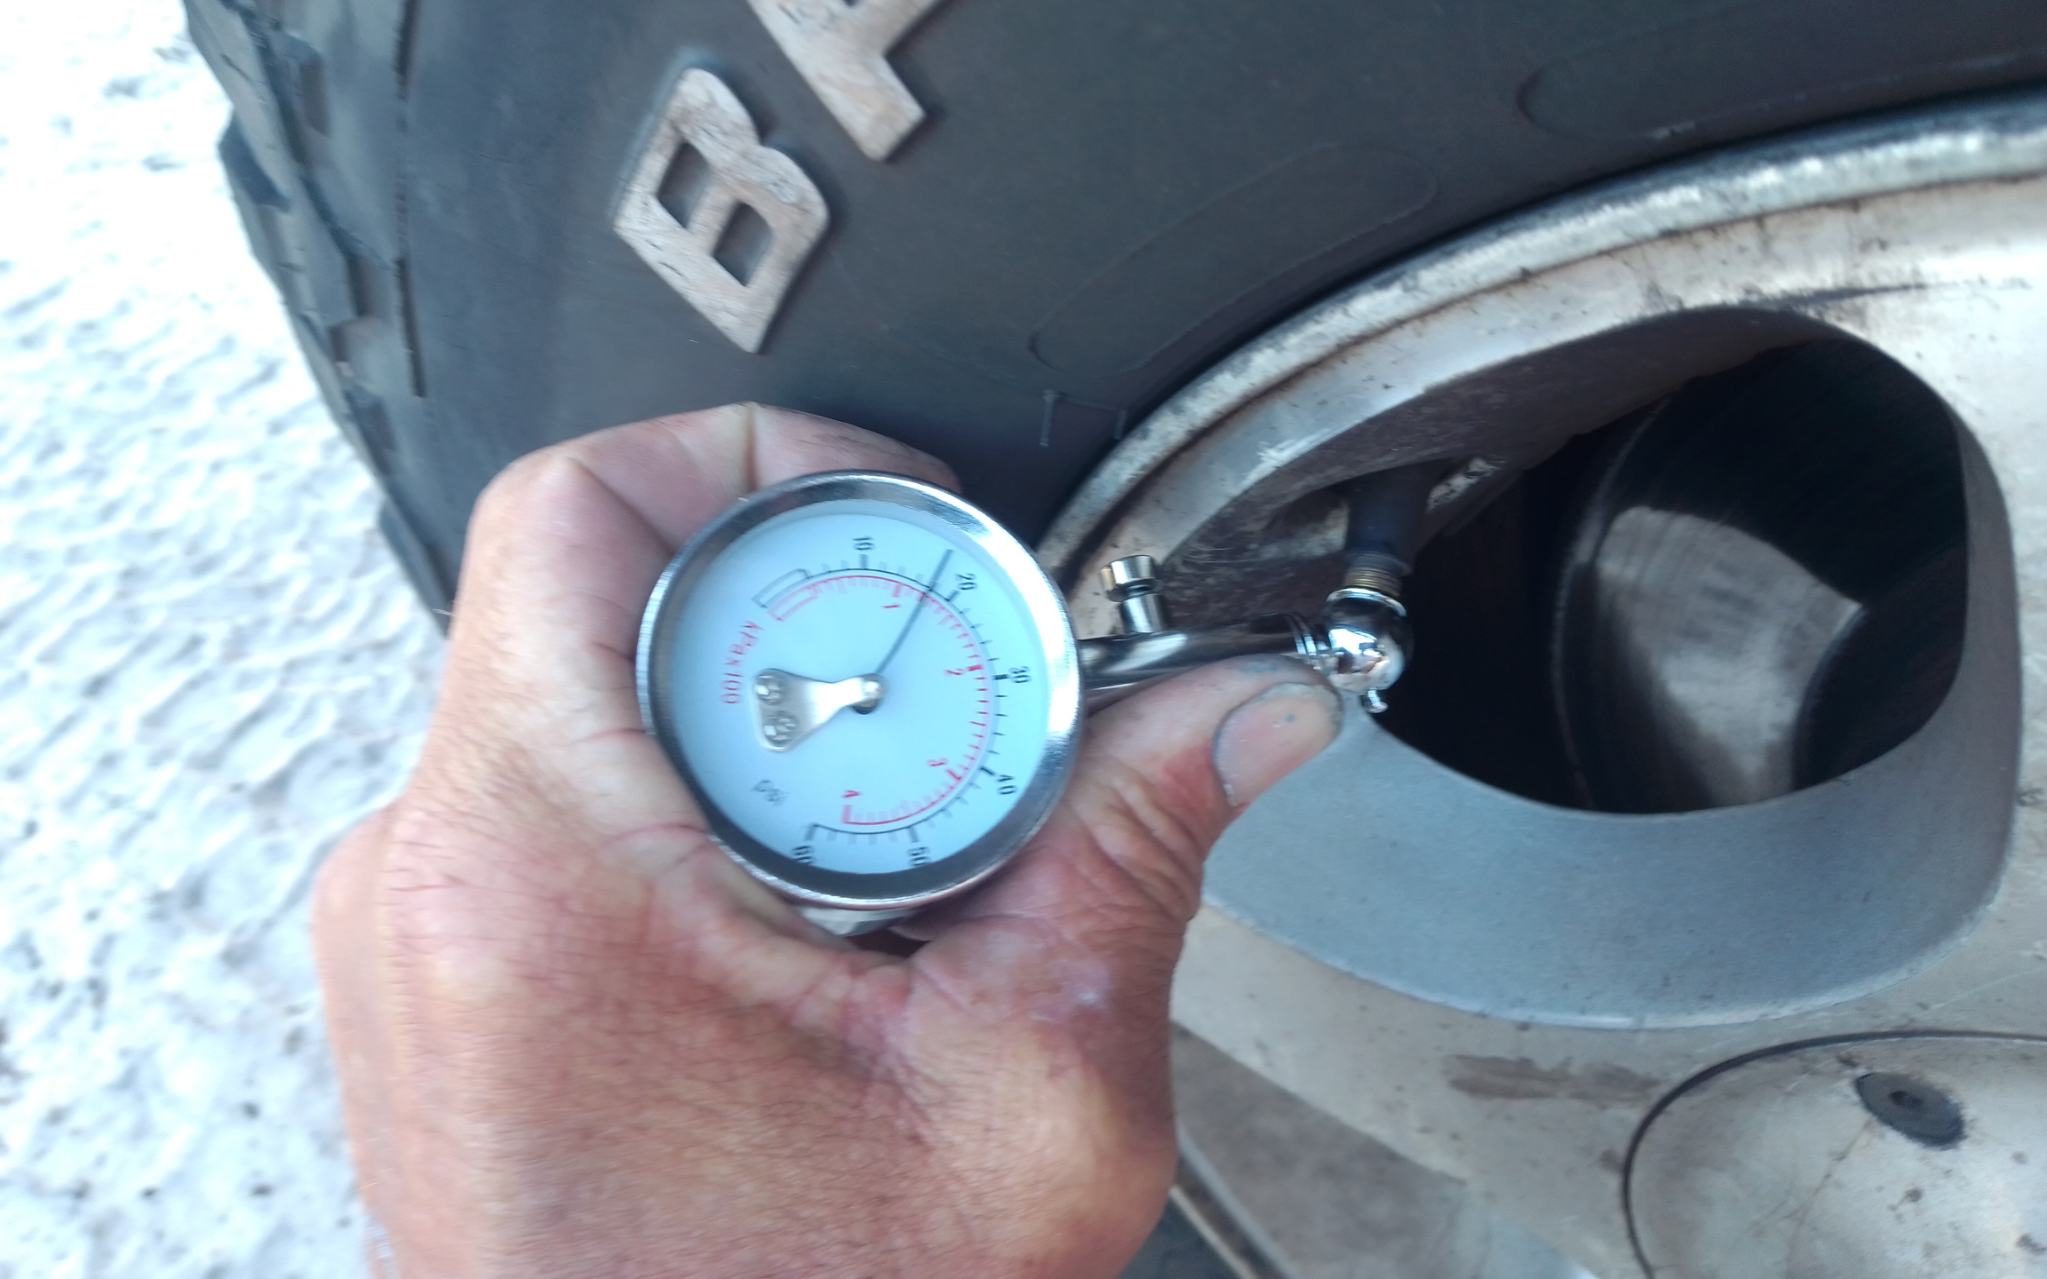 air pressure gauge